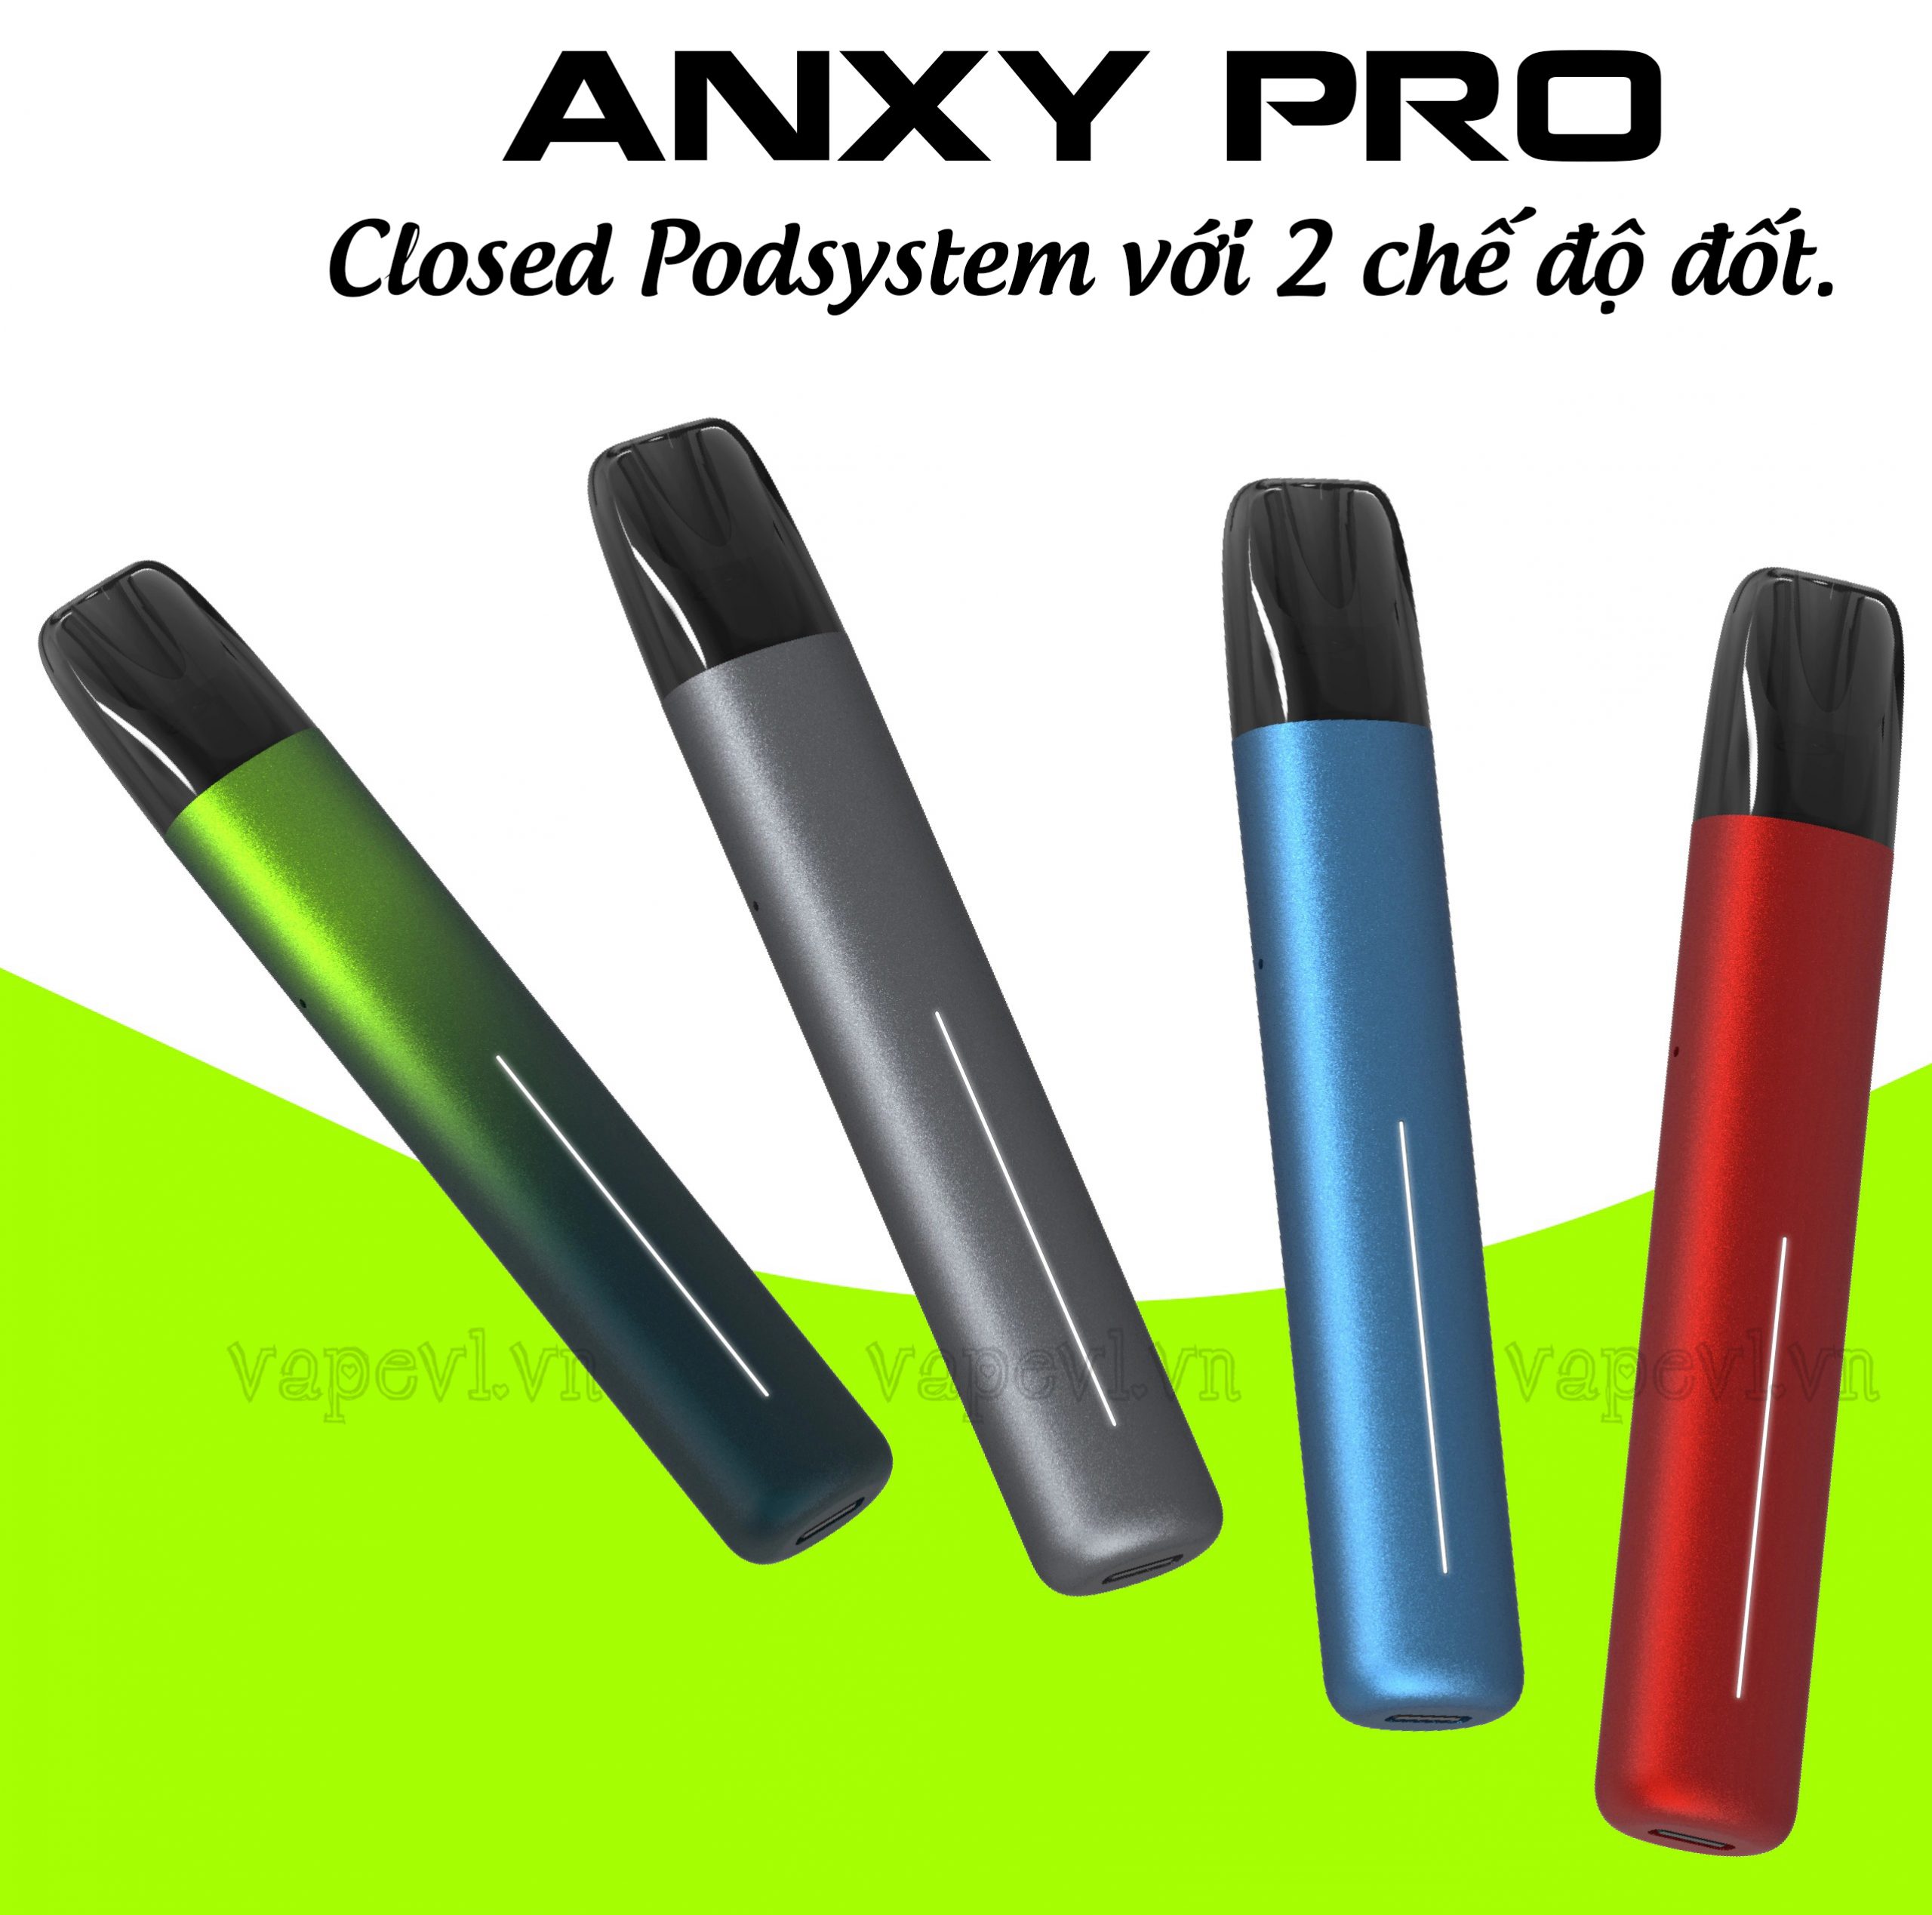 Hệ thống vape ANYX Pro là sự lựa chọn tuyệt vời cho những người yêu thích vape. Với thiết kế đẹp mắt và chất lượng đảm bảo, sản phẩm này sẽ đem đến cho bạn những trải nghiệm vape tuyệt vời và vô cùng an toàn. Hãy xem hình ảnh liên quan để khám phá thêm về tính năng và công dụng của hệ thống vape ANYX Pro.